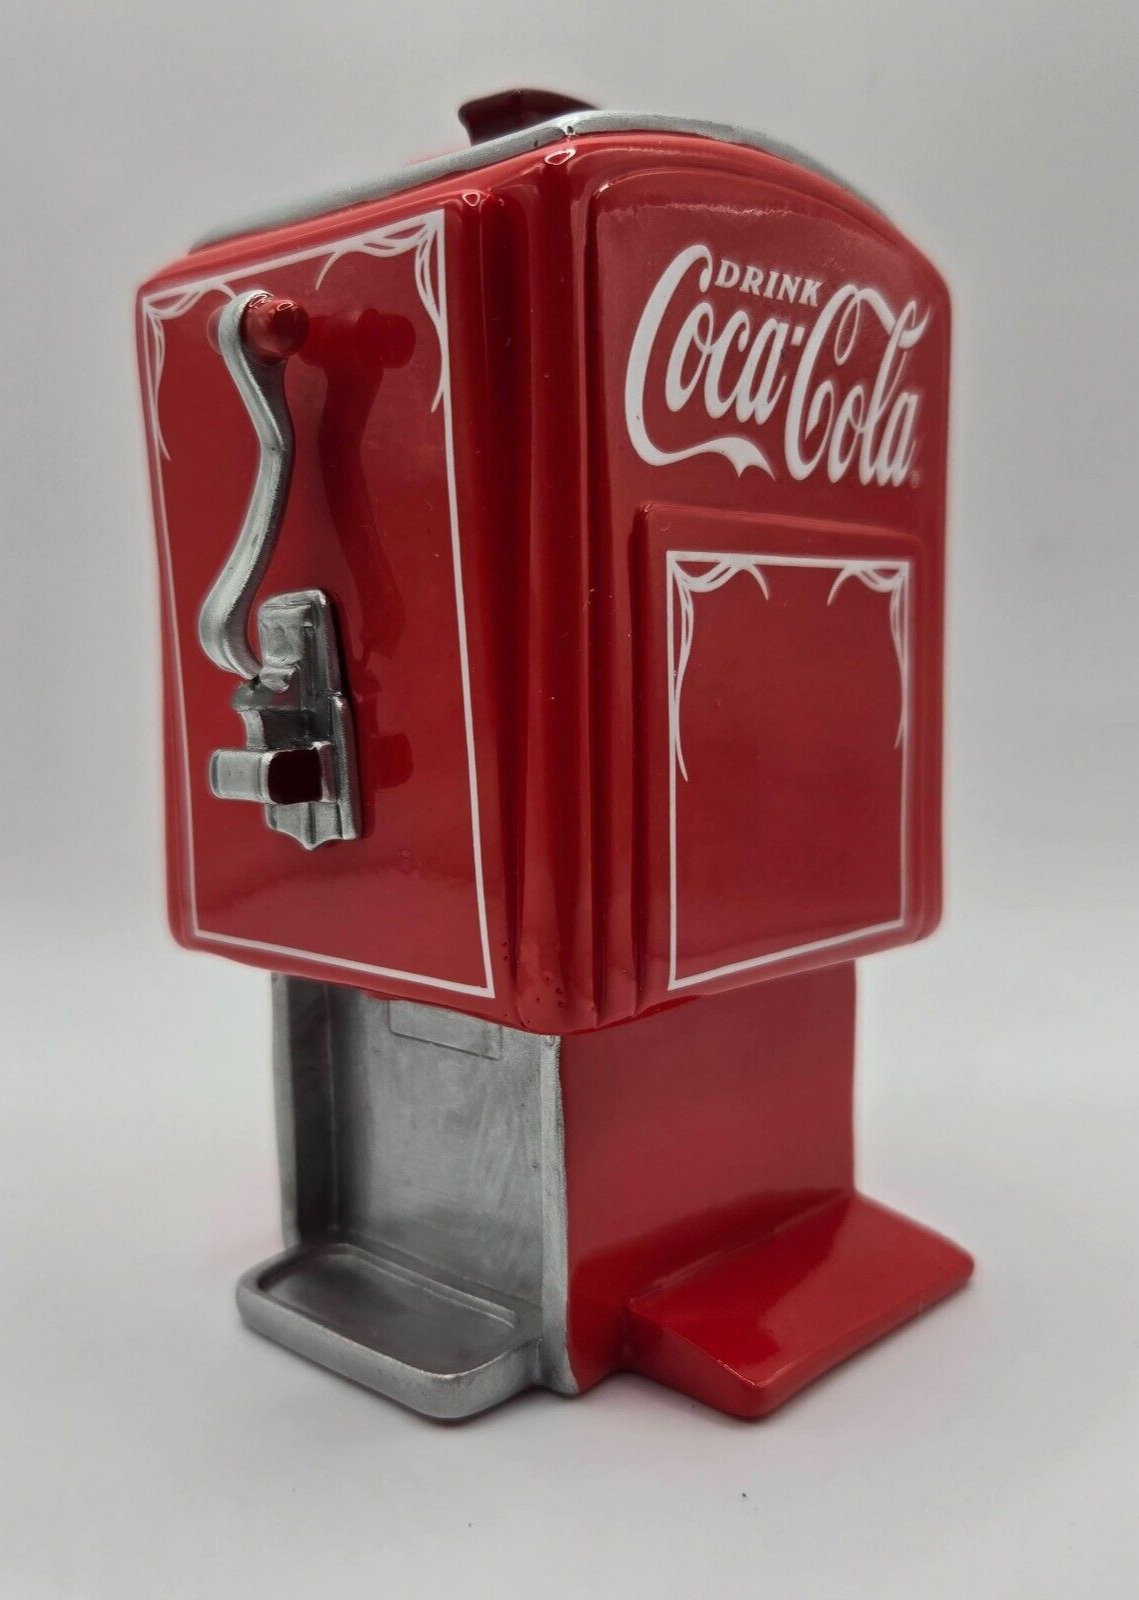 Coca-Cola 1940s Soda Fountain Dispenser - Hamilton Collection Limited Run